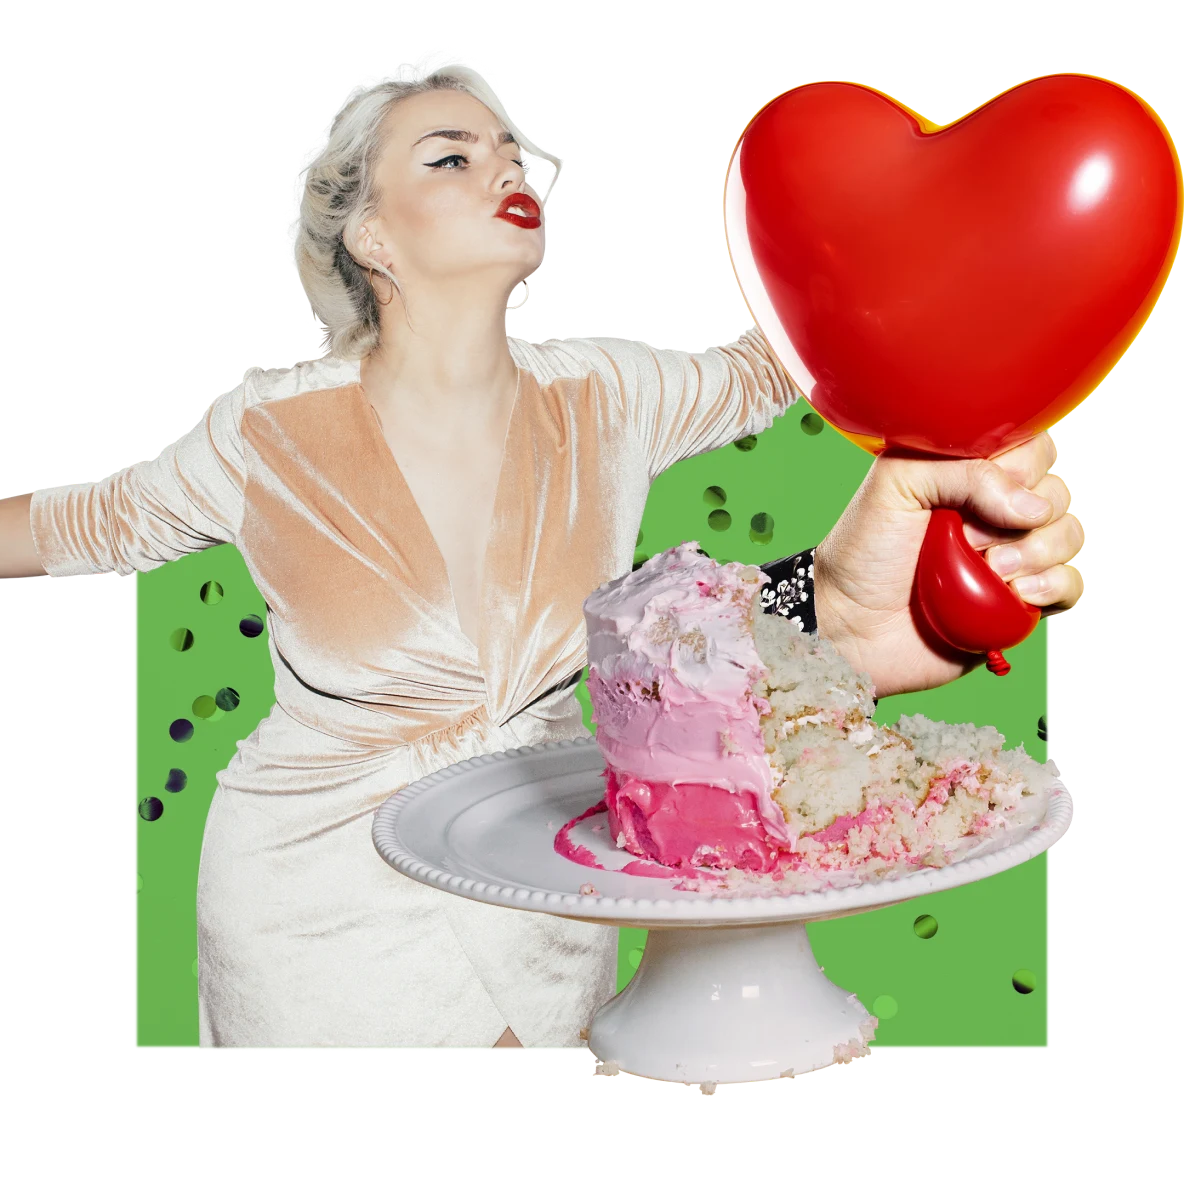 Collage sur le thème de la fête. À gauche, femme blanche et blonde avec du rouge à lèvres rouge vif qui danse en robe rose. Gâteau rose à moitié mangé sur une assiette blanche. Main d'une personne blanche serrant le bas d'un ballon rouge en forme de cœur.